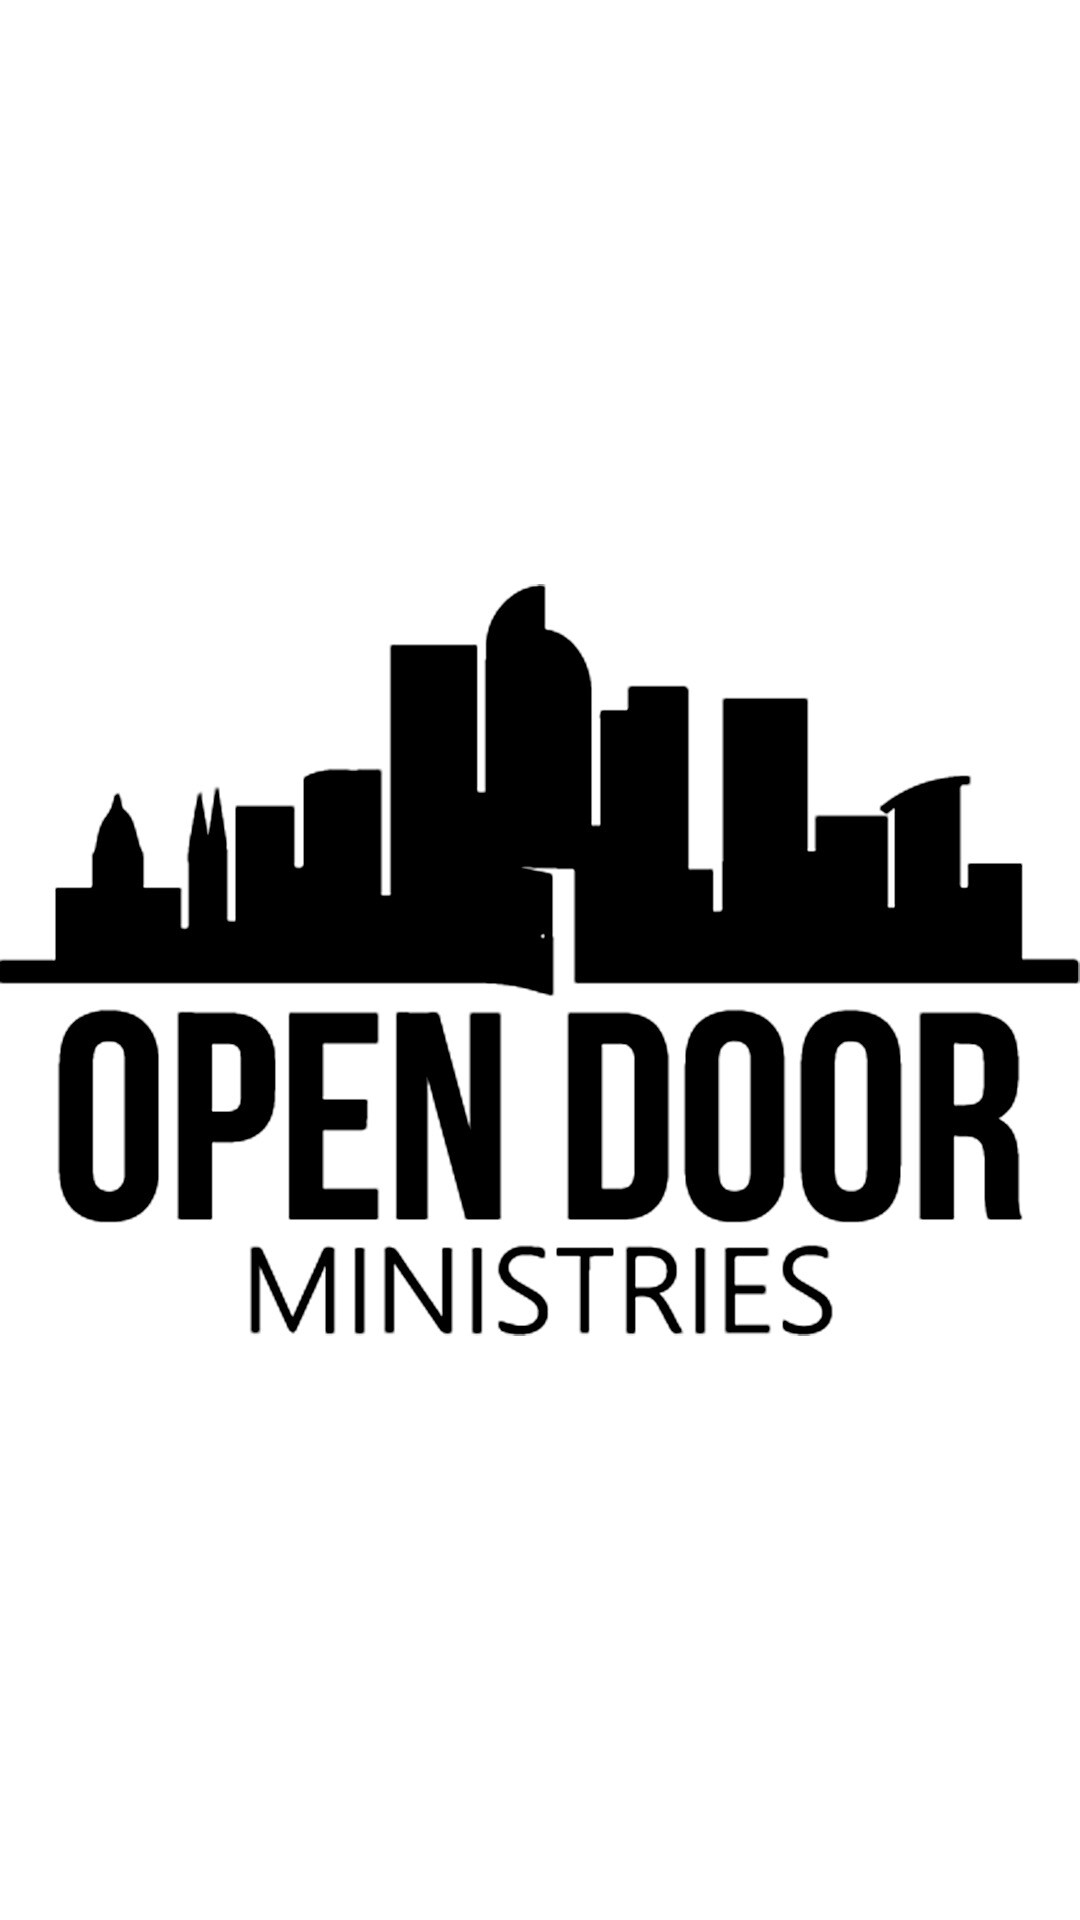 Open Door Ministires